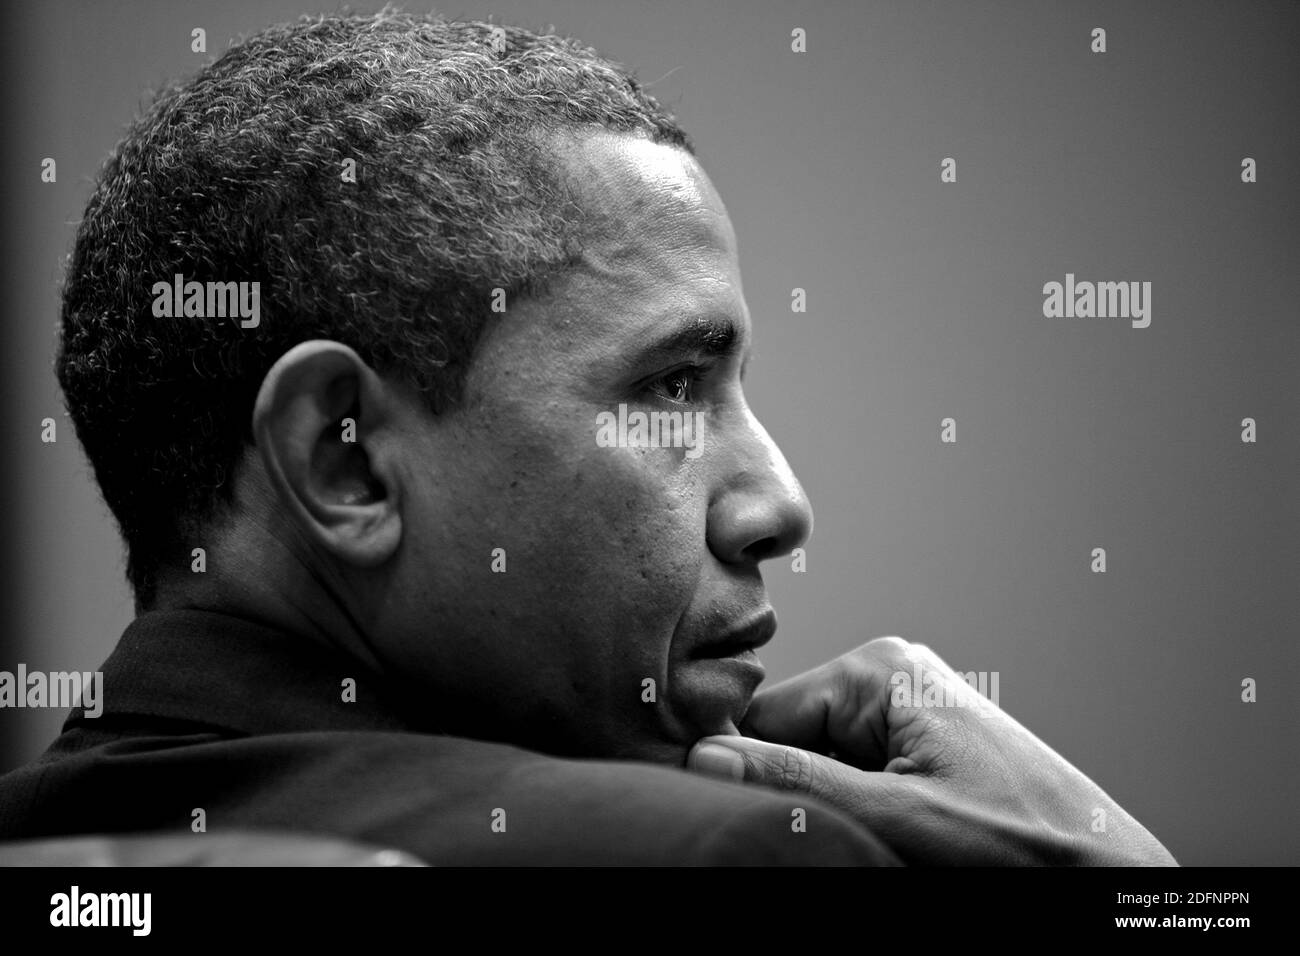 WASHINGTON DC, États-Unis - 28 janvier 2013 - Portrait du président américain Barack Obama assiste à une réunion dans la salle Roosevelt de la Maison Blanche, le 28 janvier 2013 Banque D'Images